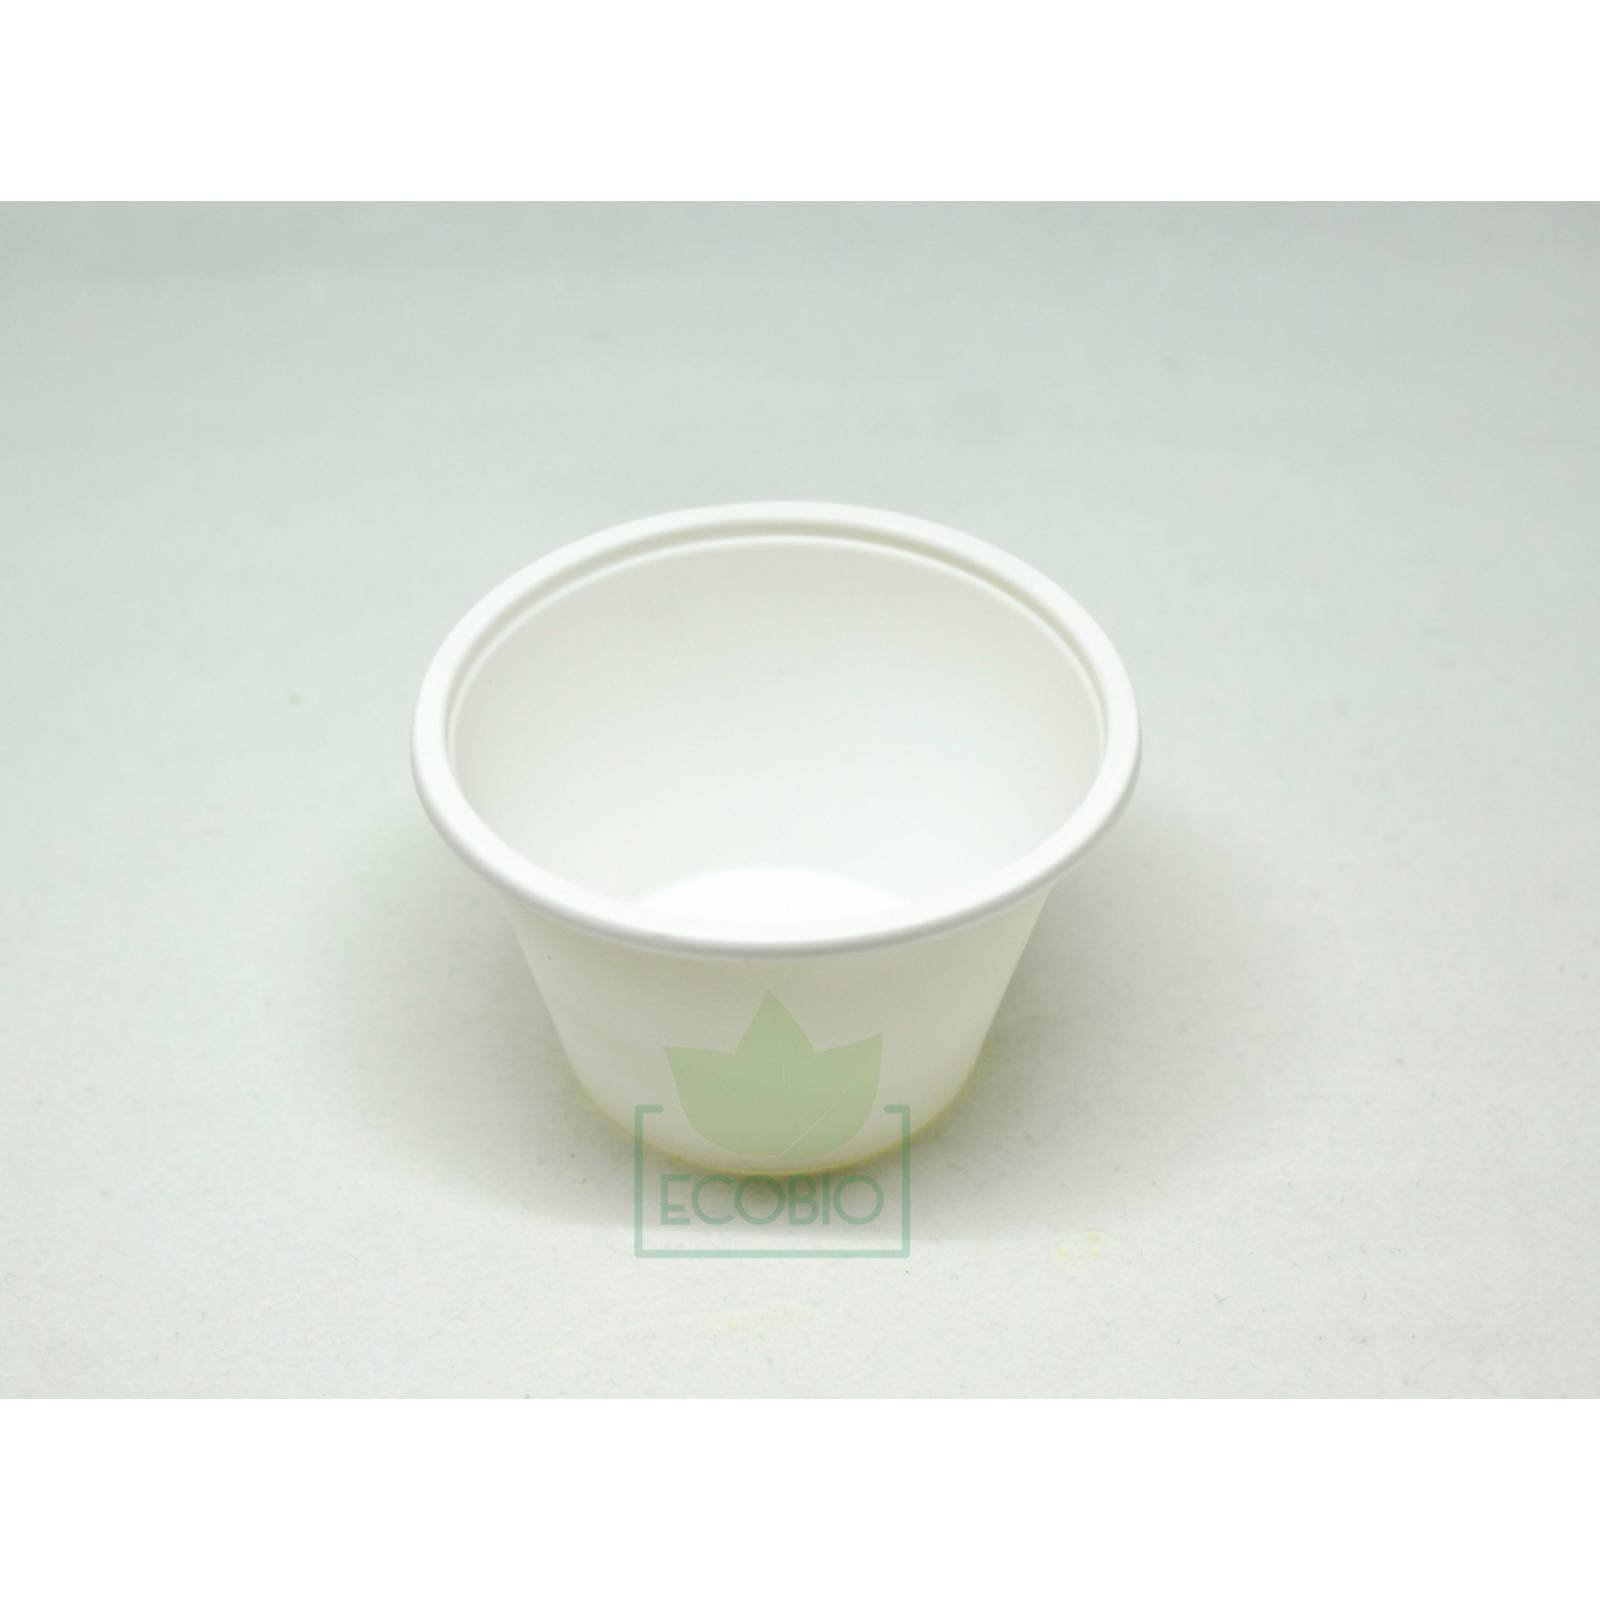 Souffle Cup 4oz Biodegradable Ecológico Ecobio